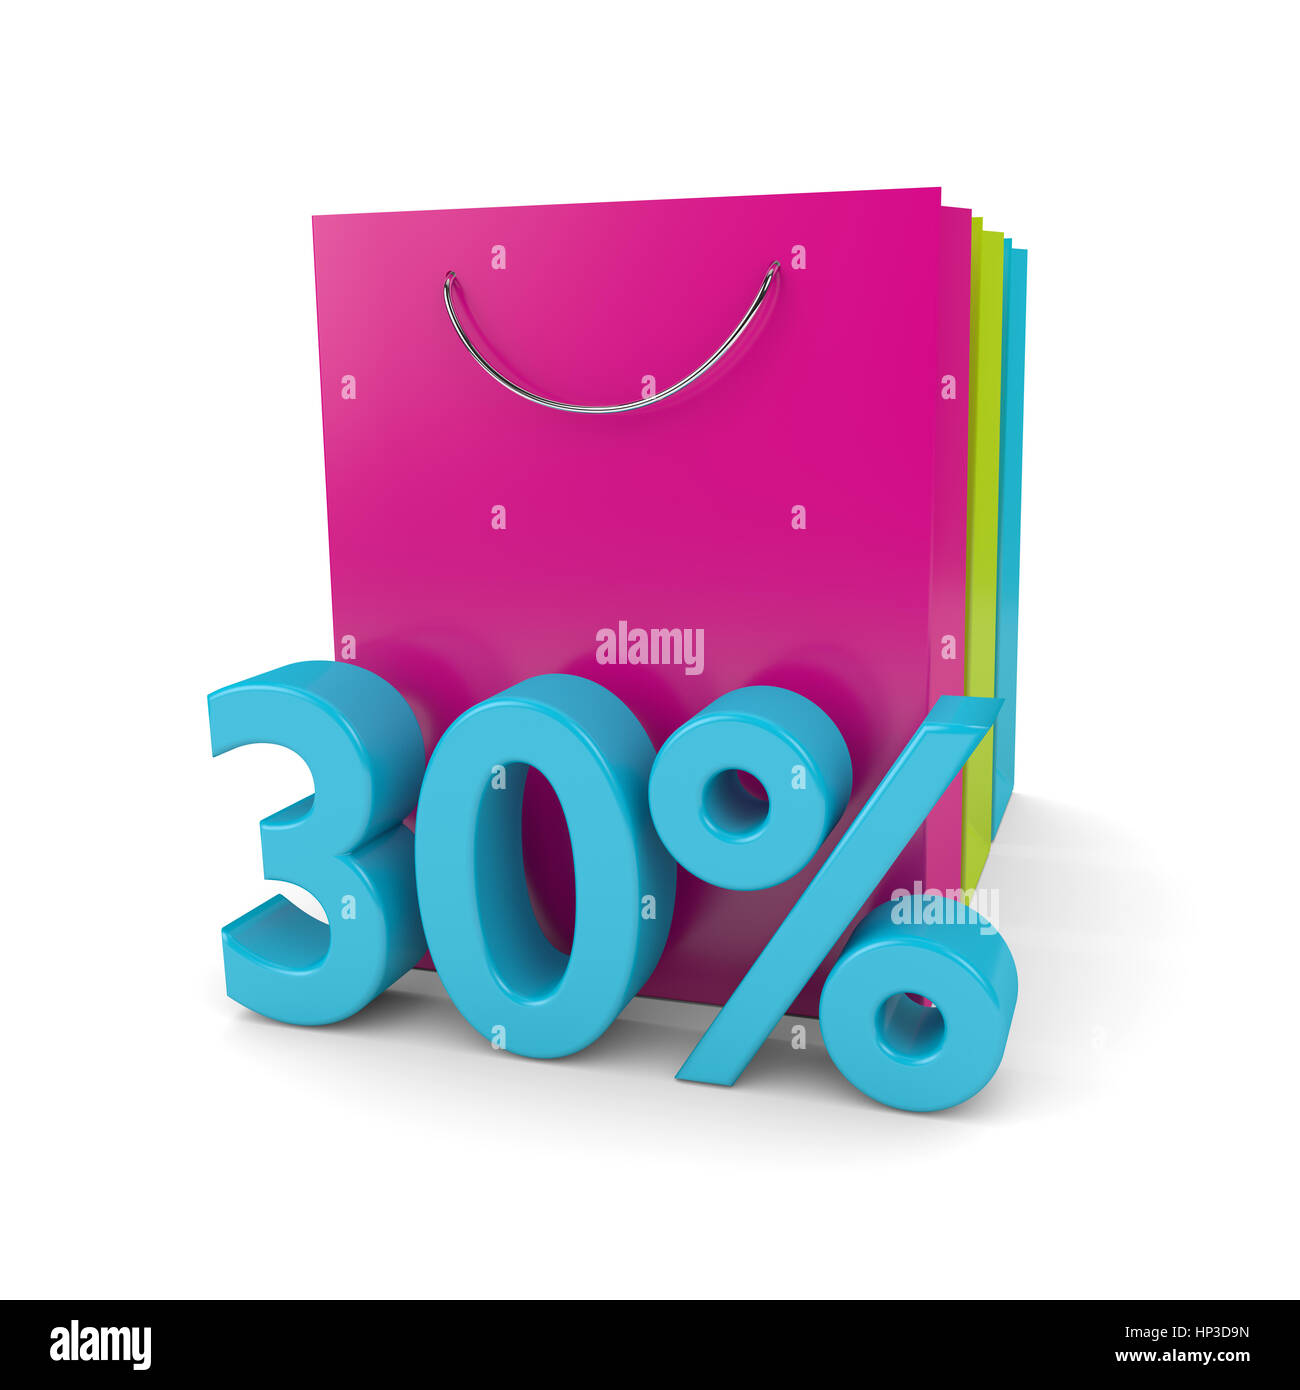 3D Rendering von Einkaufstaschen und Cube 30 % Rabatt auf weißem Hintergrund Stockfoto